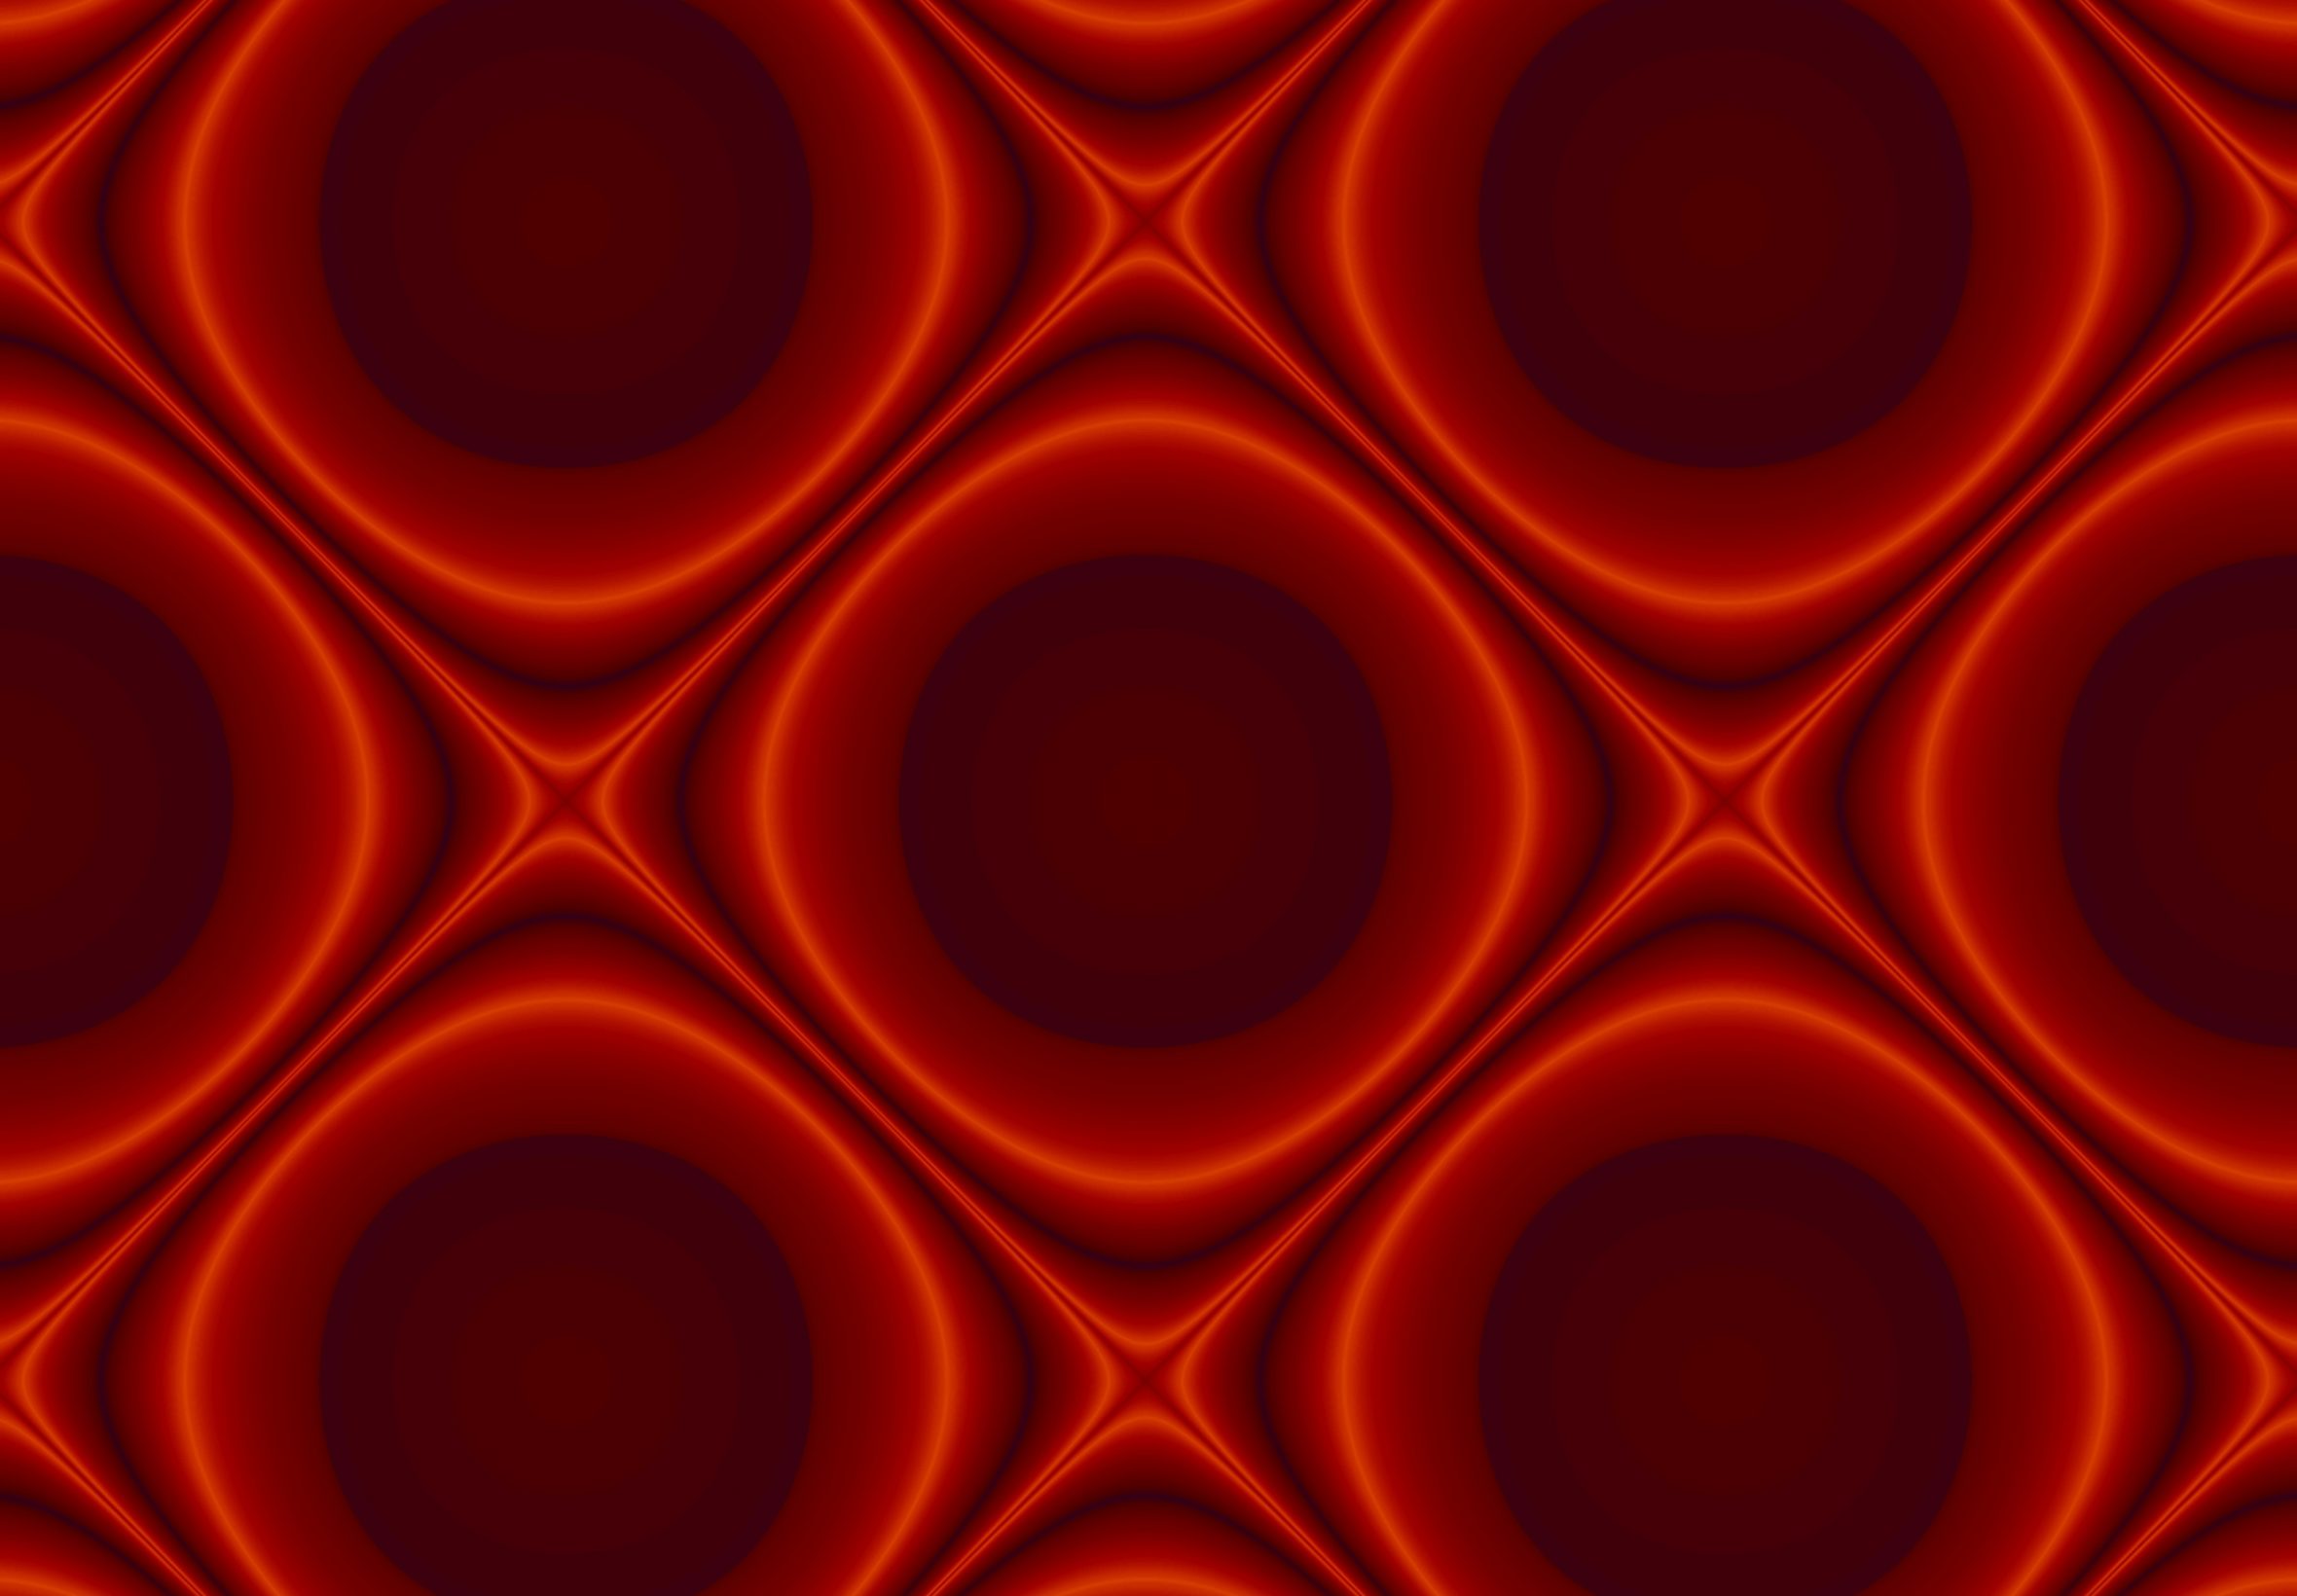 2360x1640 iPad Air wallpaper 4k Abstract Pattern Design Red Ipad Wallpaper 2360x1640 pixels resolution